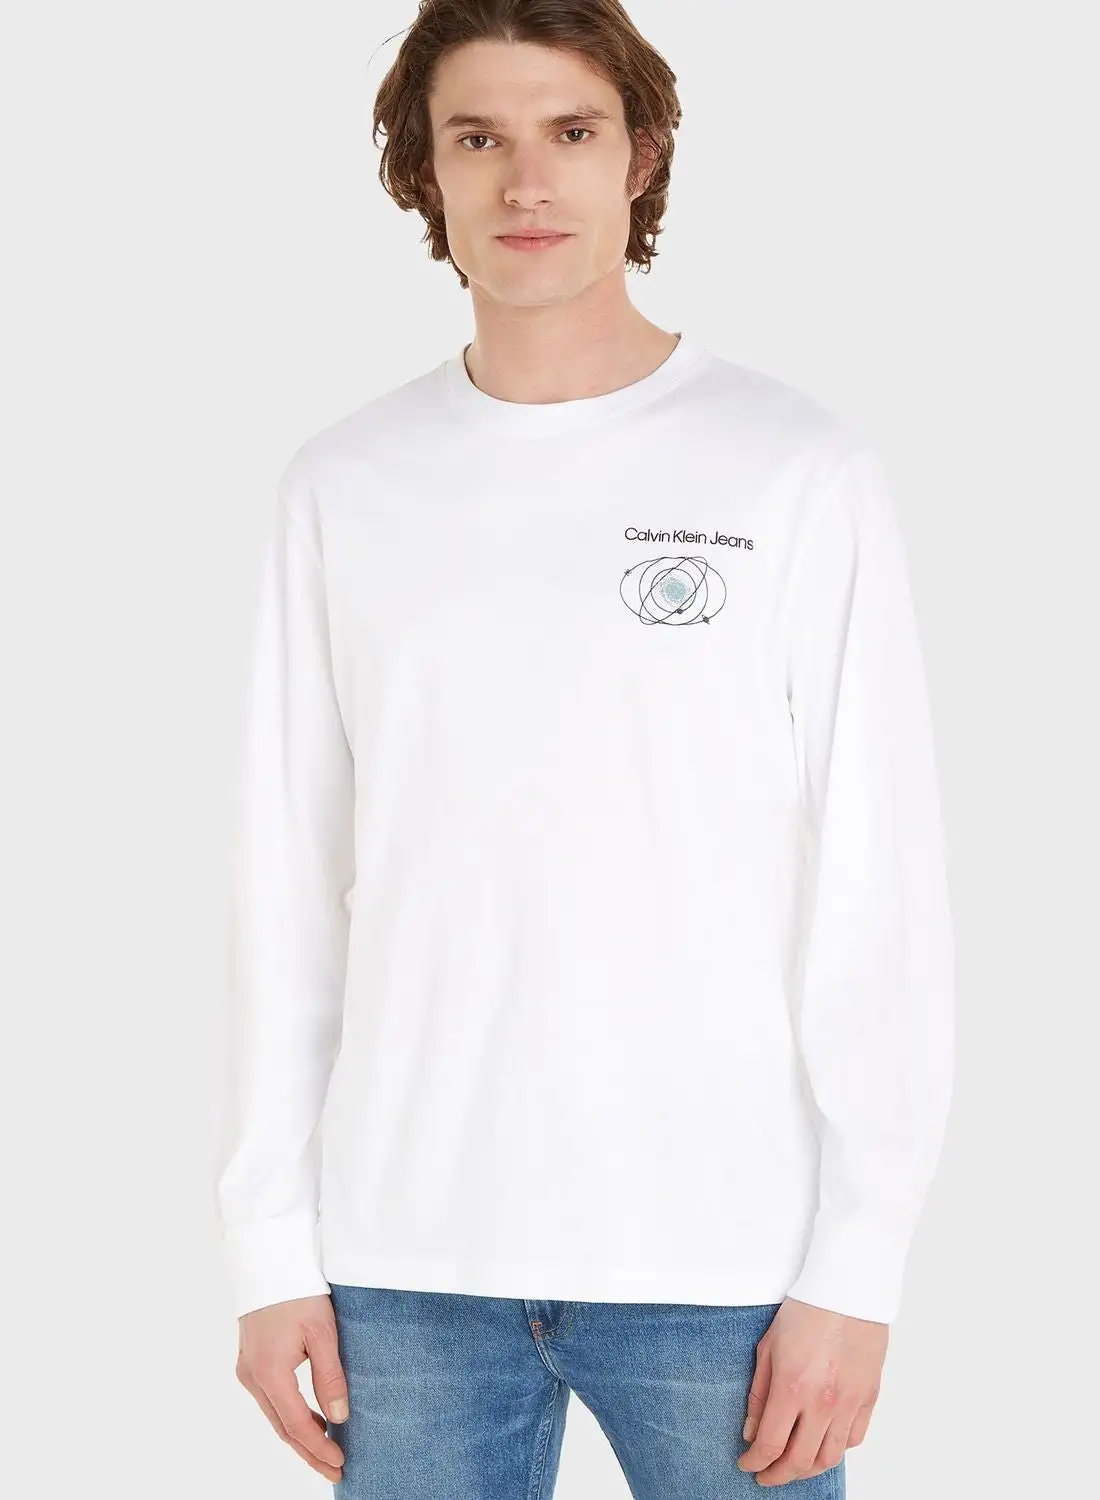 Calvin Klein Jeans Slogan Crew Neck T-Shirt